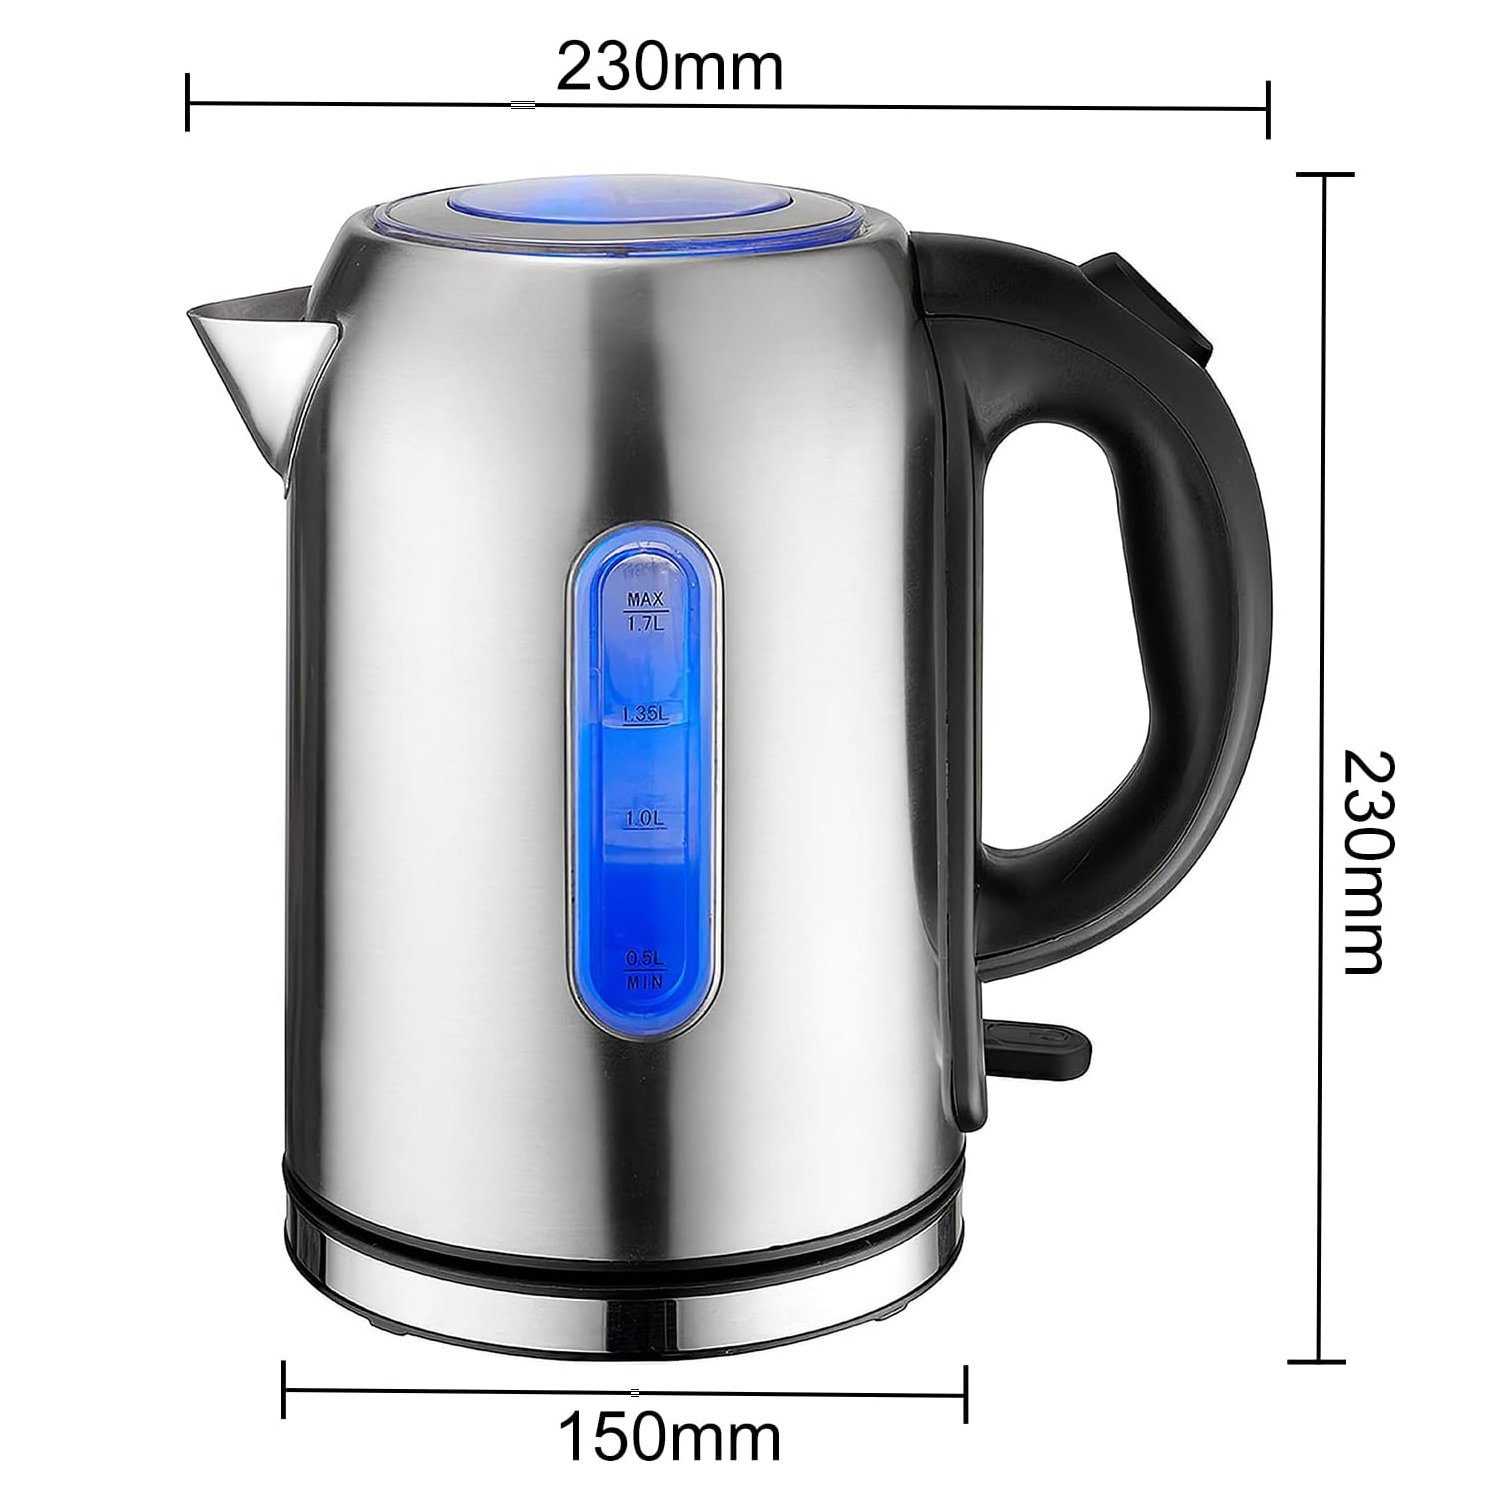 und Abschaltautomatik für Tee LED-Anzeige,1,7L, und Wasserkocher,mit Wasserkocher Trockenkochschutz, Wasserkocher, Kaffee W, 2000,00 Elektrischer Mutoy